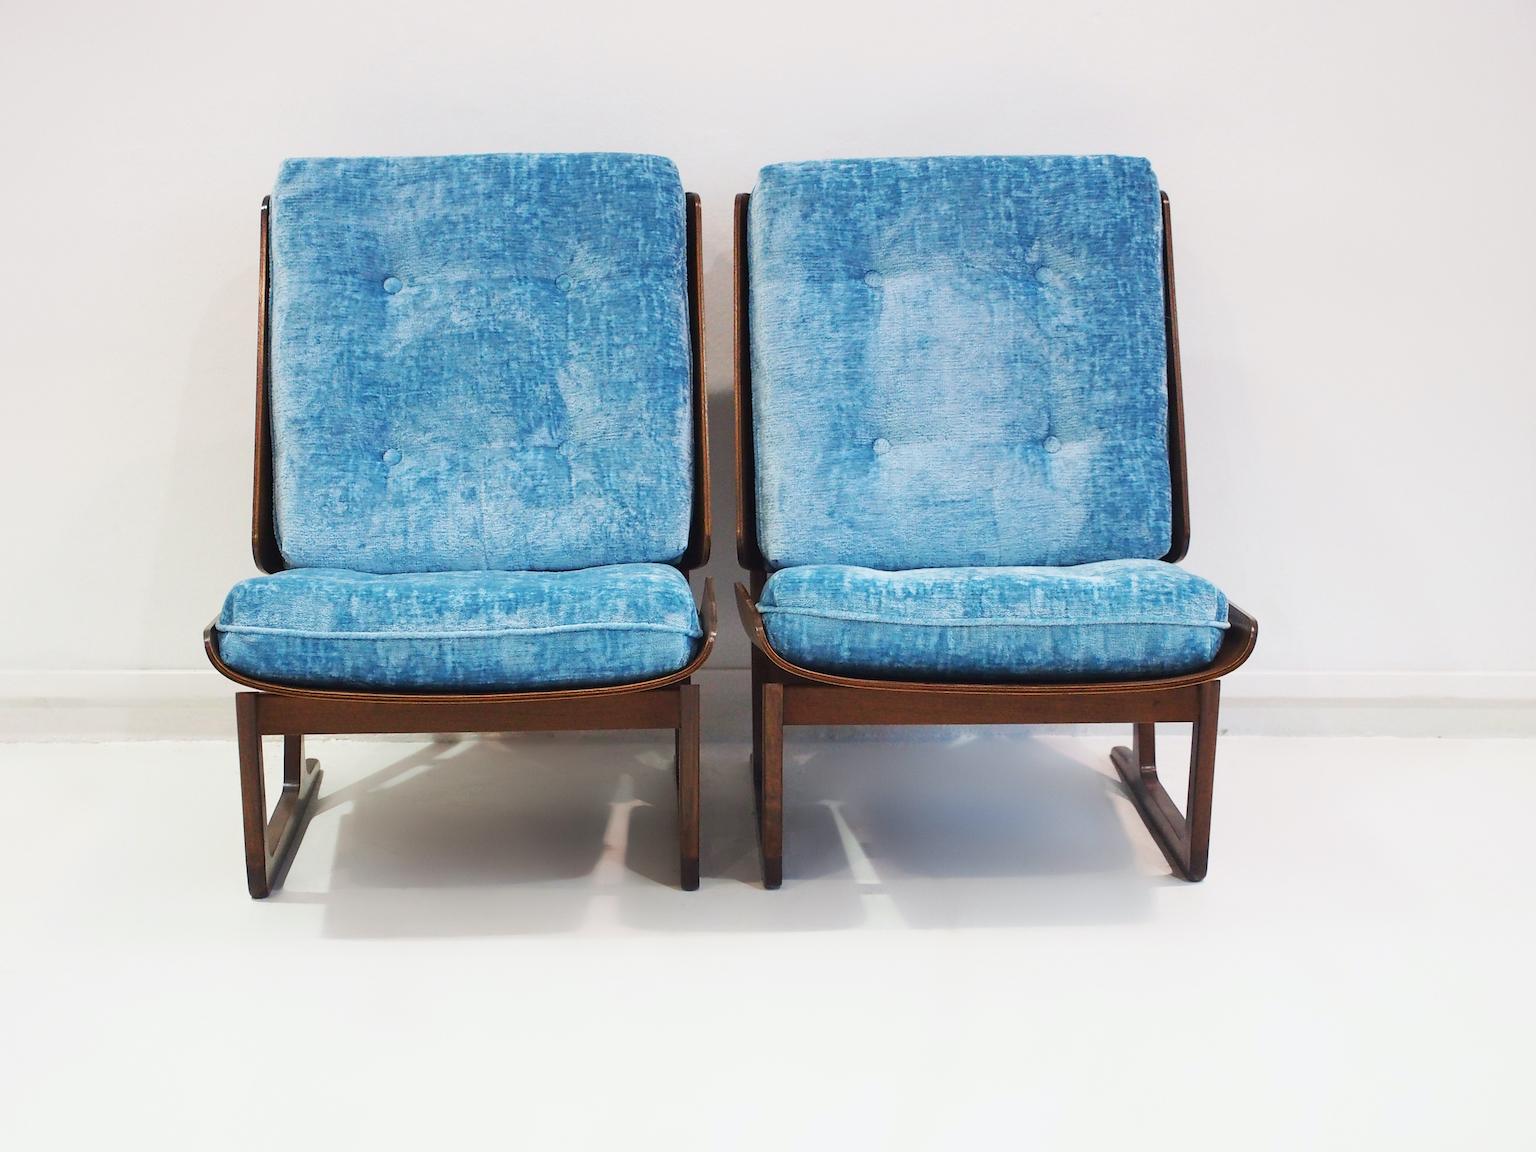 Ein Paar Sessel aus den 1950er Jahren. Bemerkenswert ist die Rückenlehne der Stühle, die aus einem einzigen Holzblock besteht, der das Kissen umschließt. Das gleiche Design wird für den Sitz verwendet. Einige haben das Design der dänischen